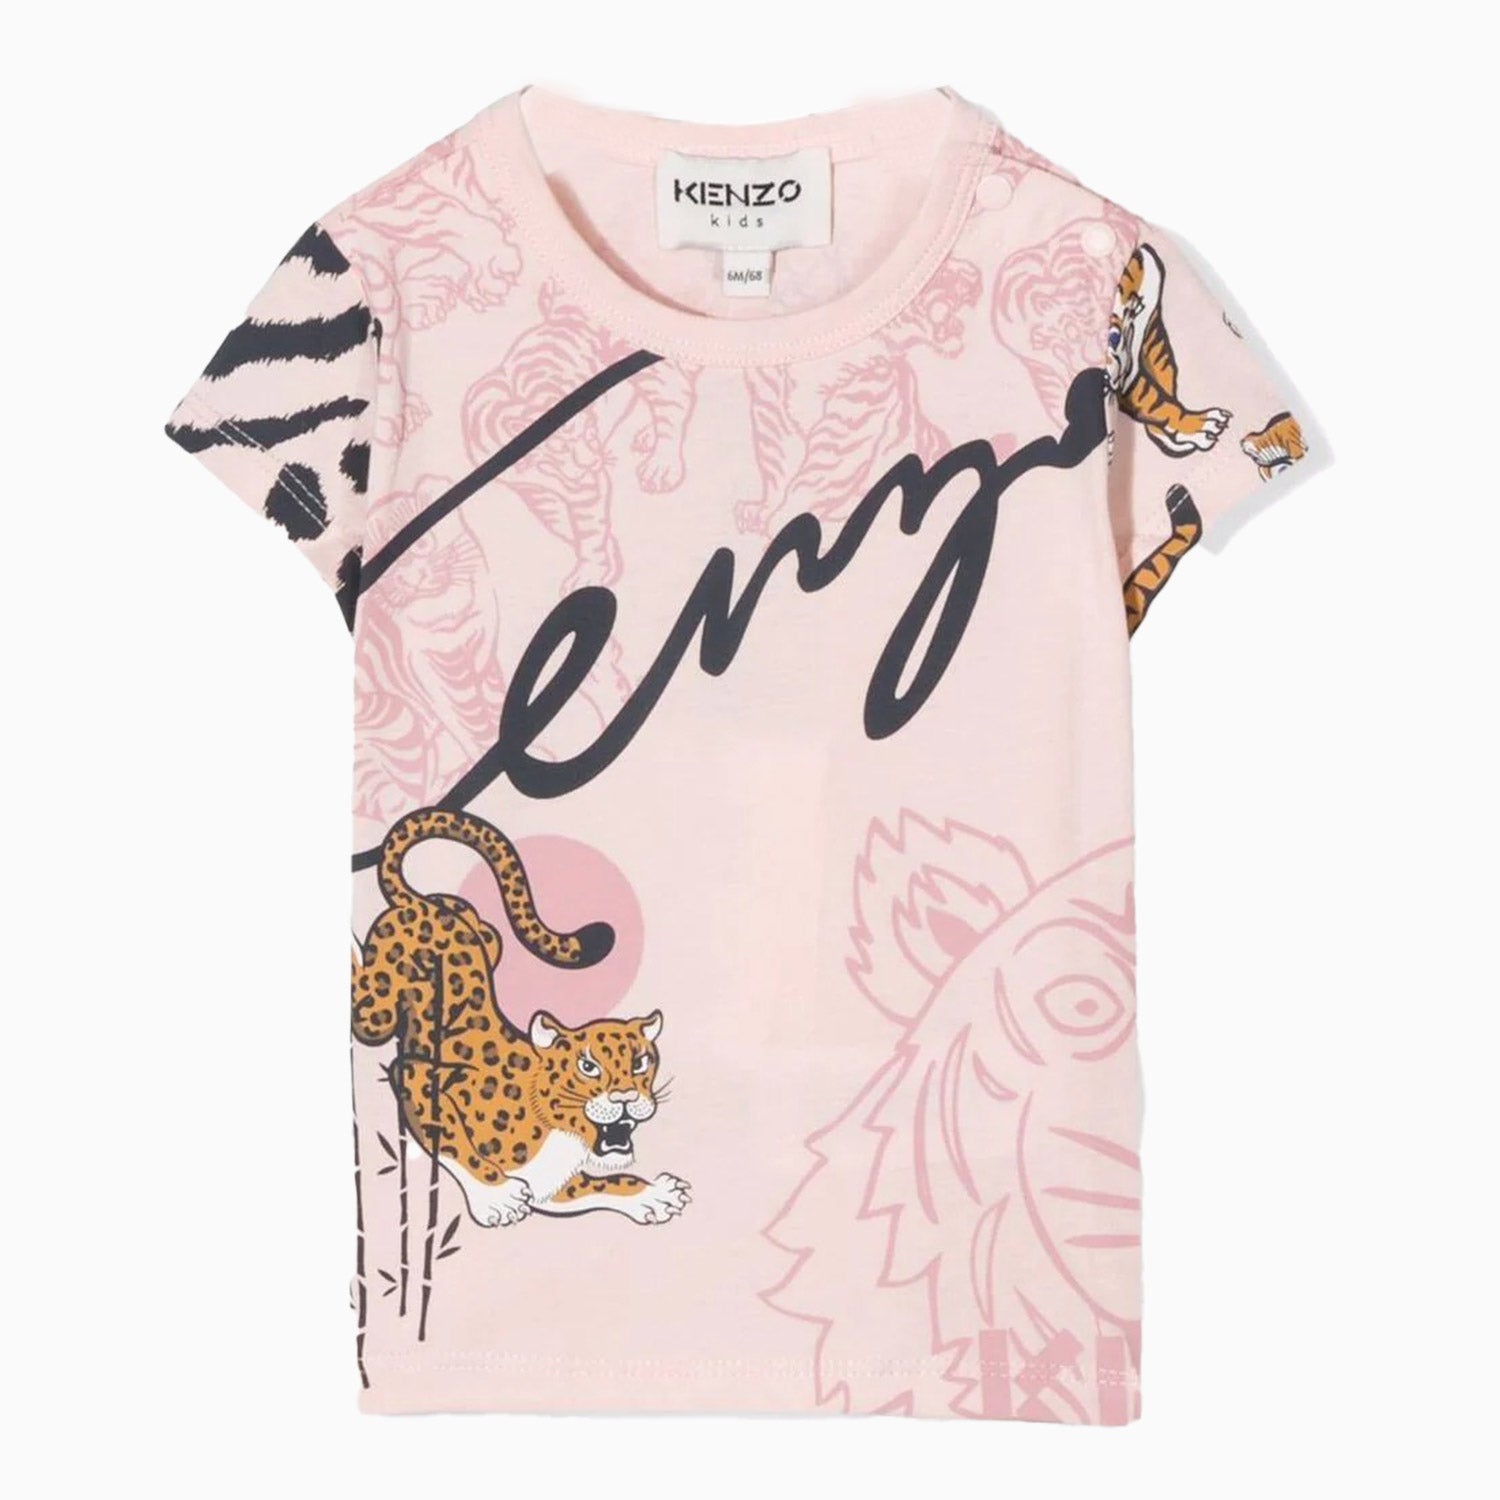 kenzo-kids-tiger-motif-t-shirt-toddlers-k05359-471